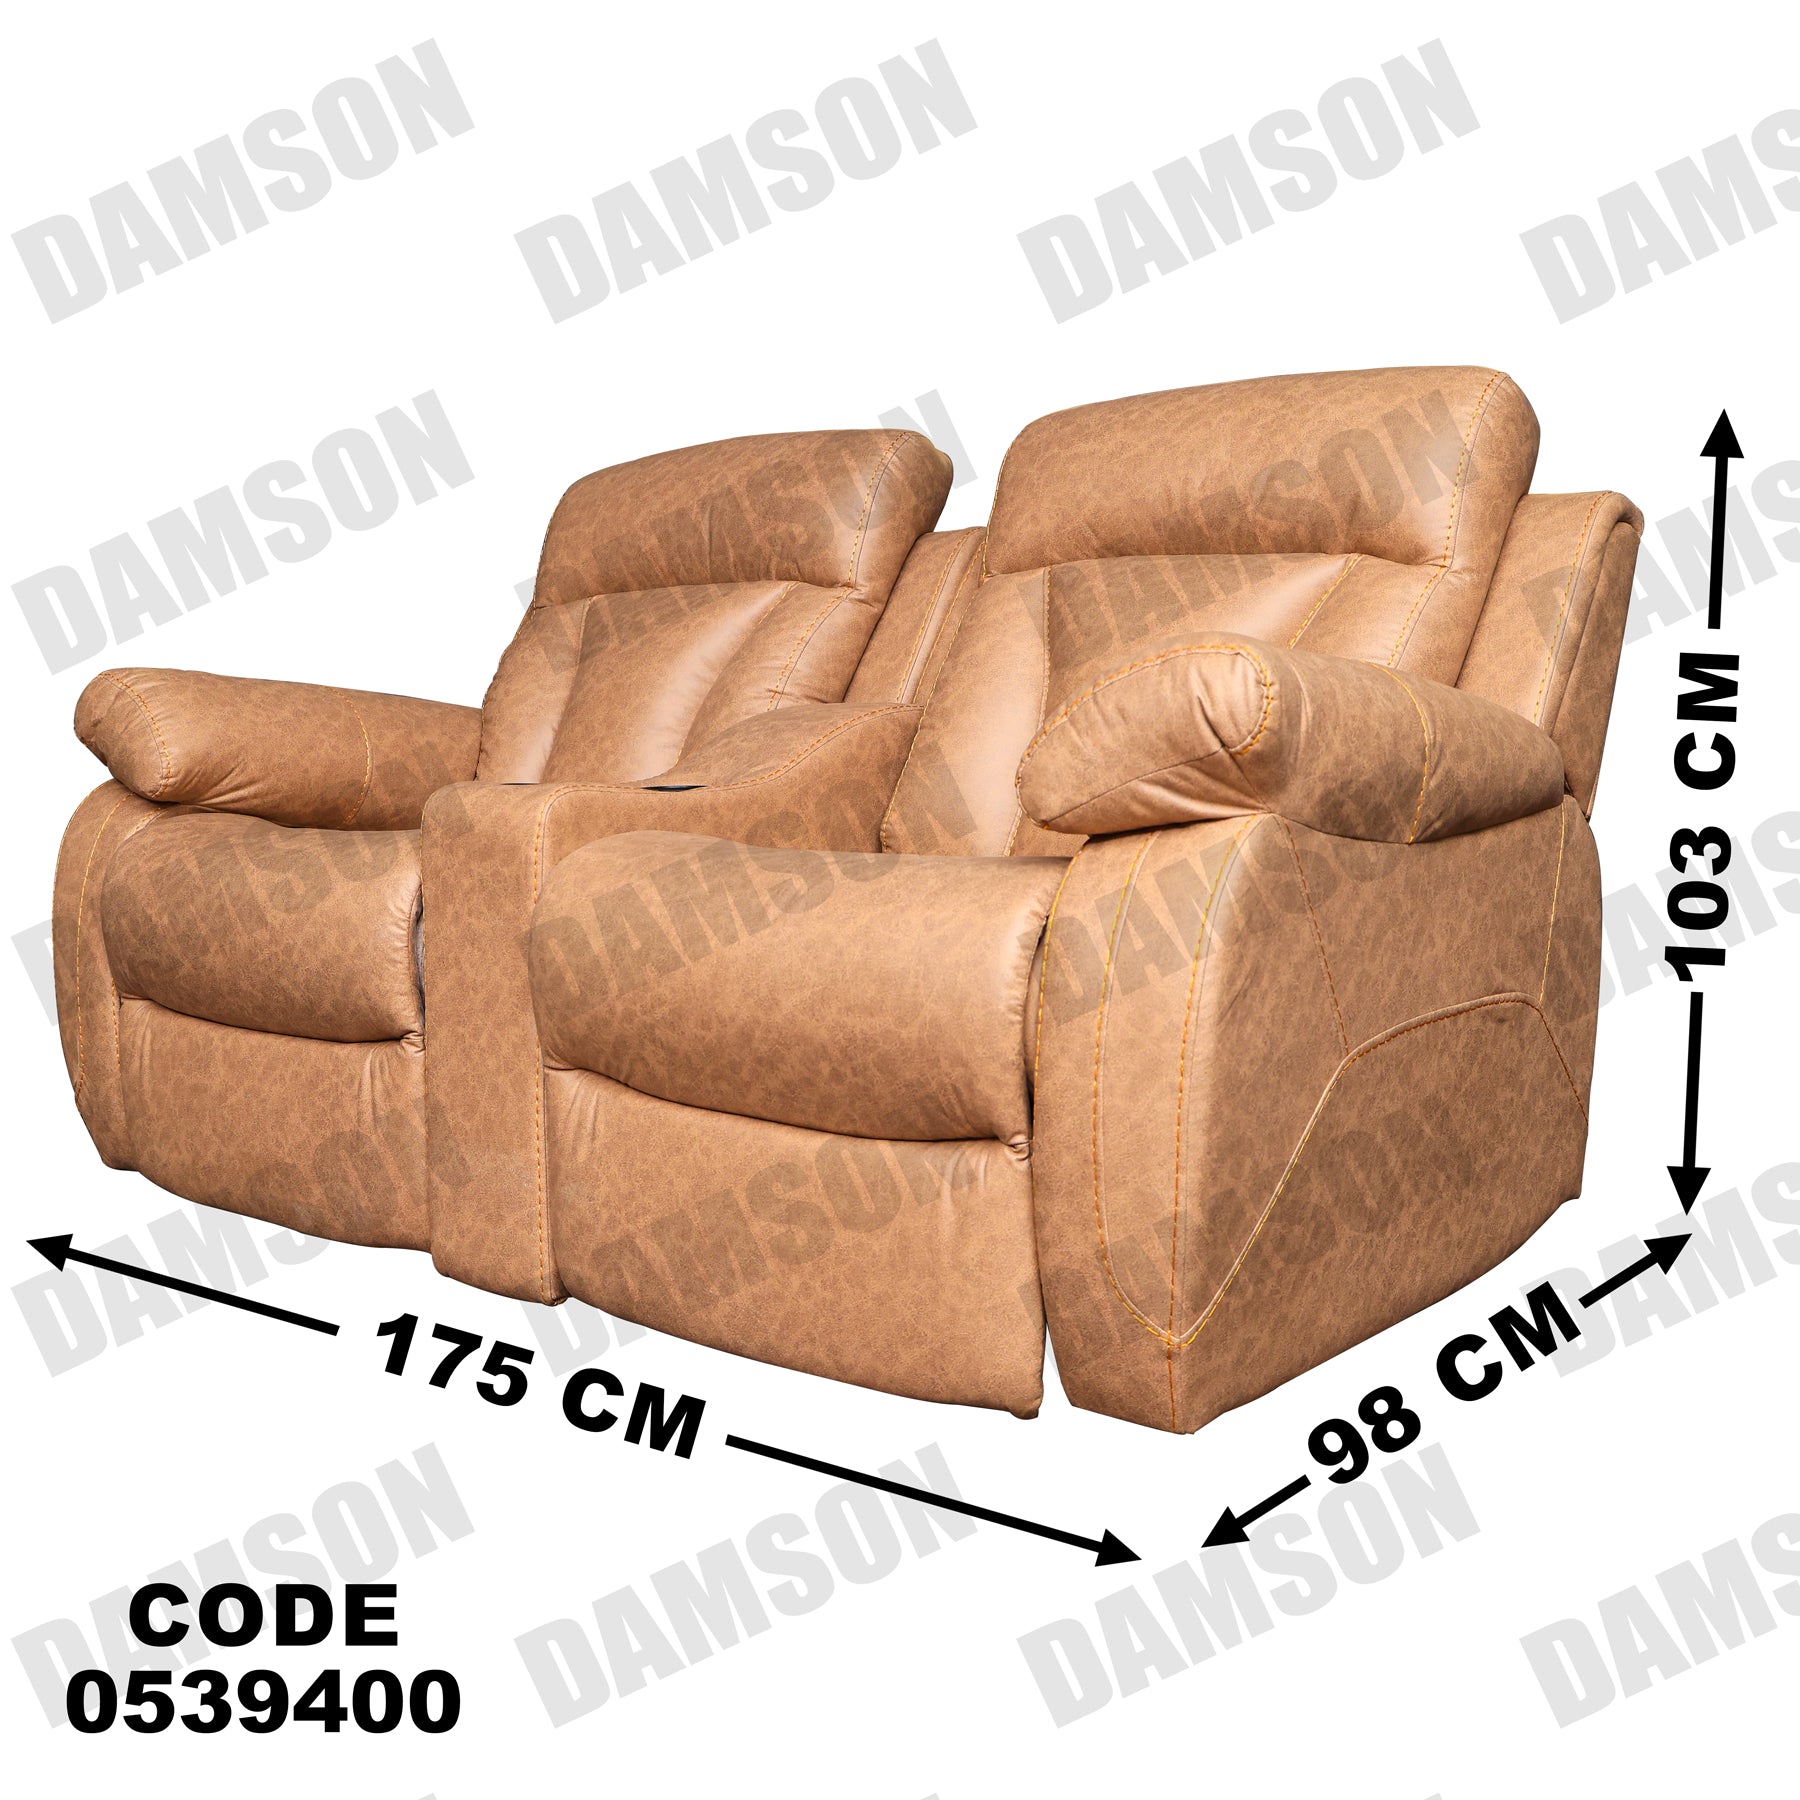 انترية 394 - Damson Furnitureانترية 394